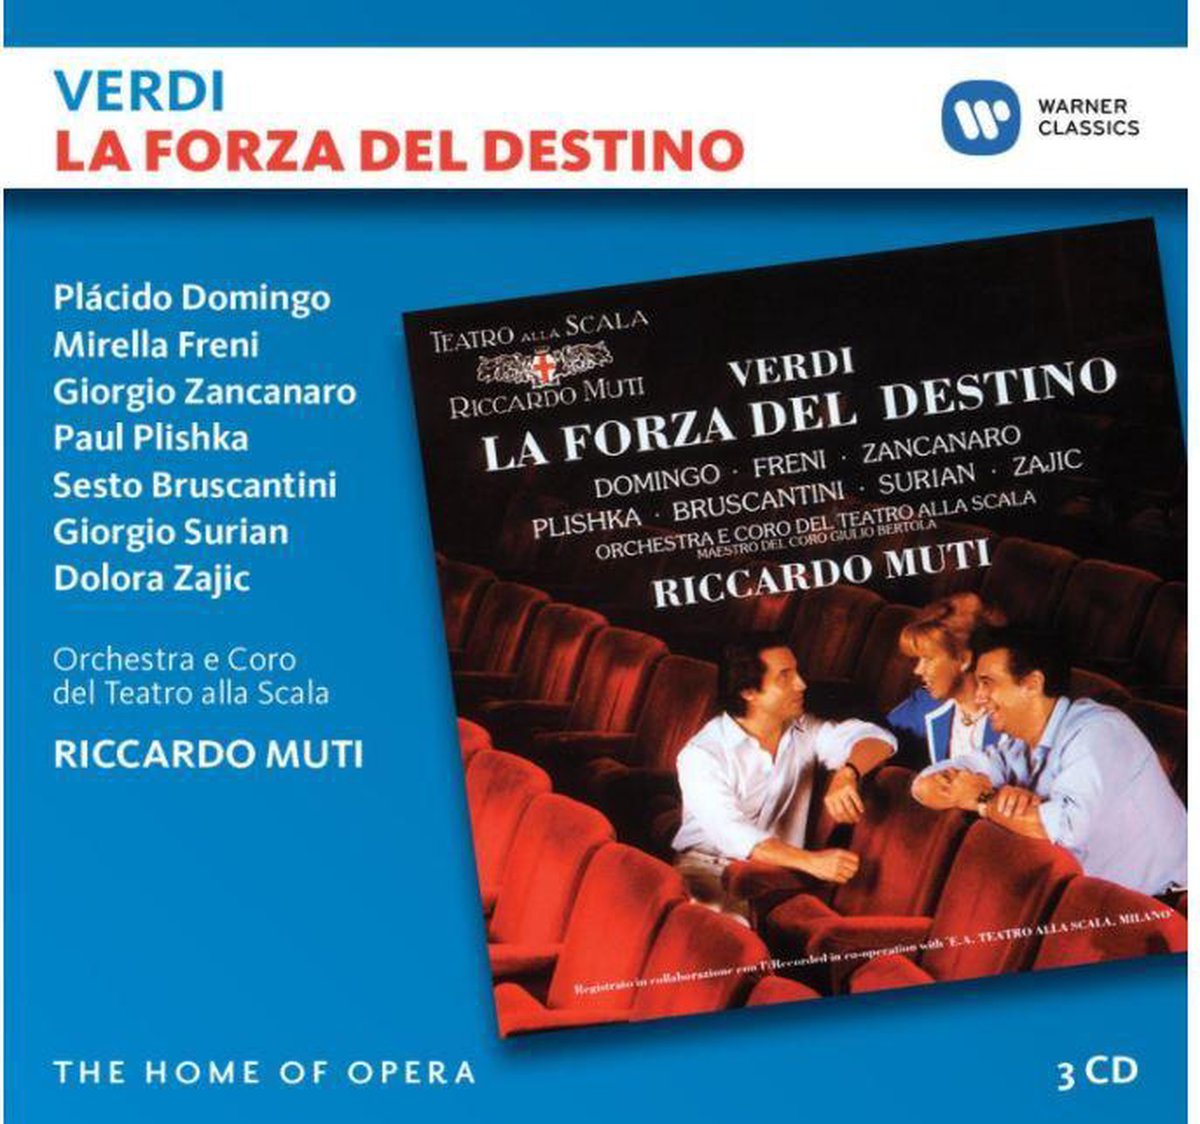 La Forza del Destino | Giuseppe Verdi, Placido Domingo, Orchestra e Coro del Teatro alla Scala di Milano, Riccardo Muti